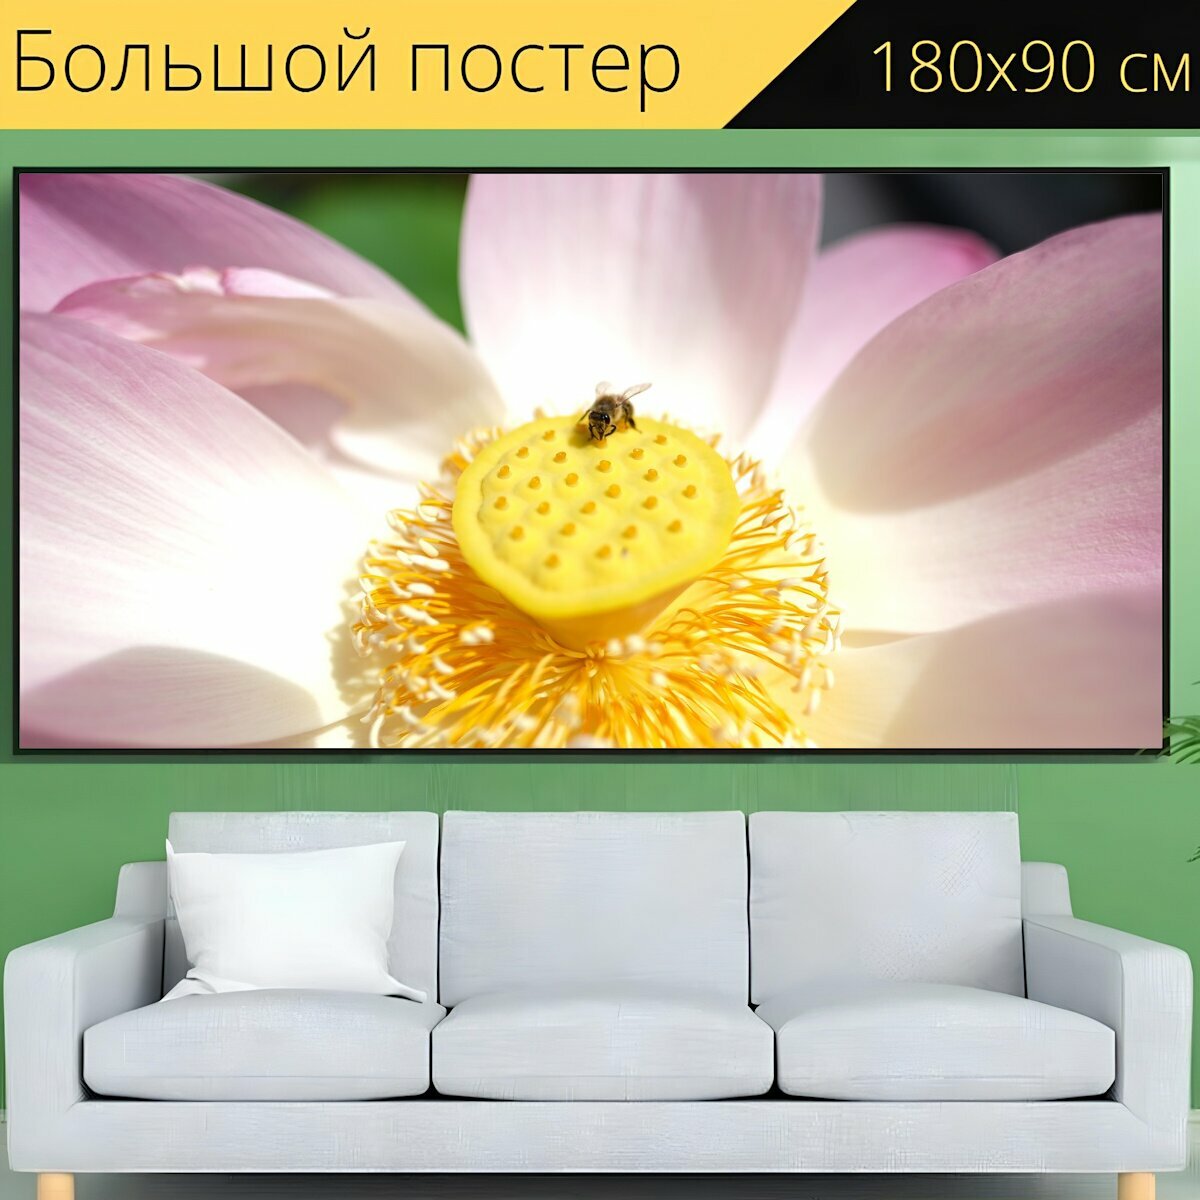 Большой постер "Лотос, цветок, пчела" 180 x 90 см. для интерьера